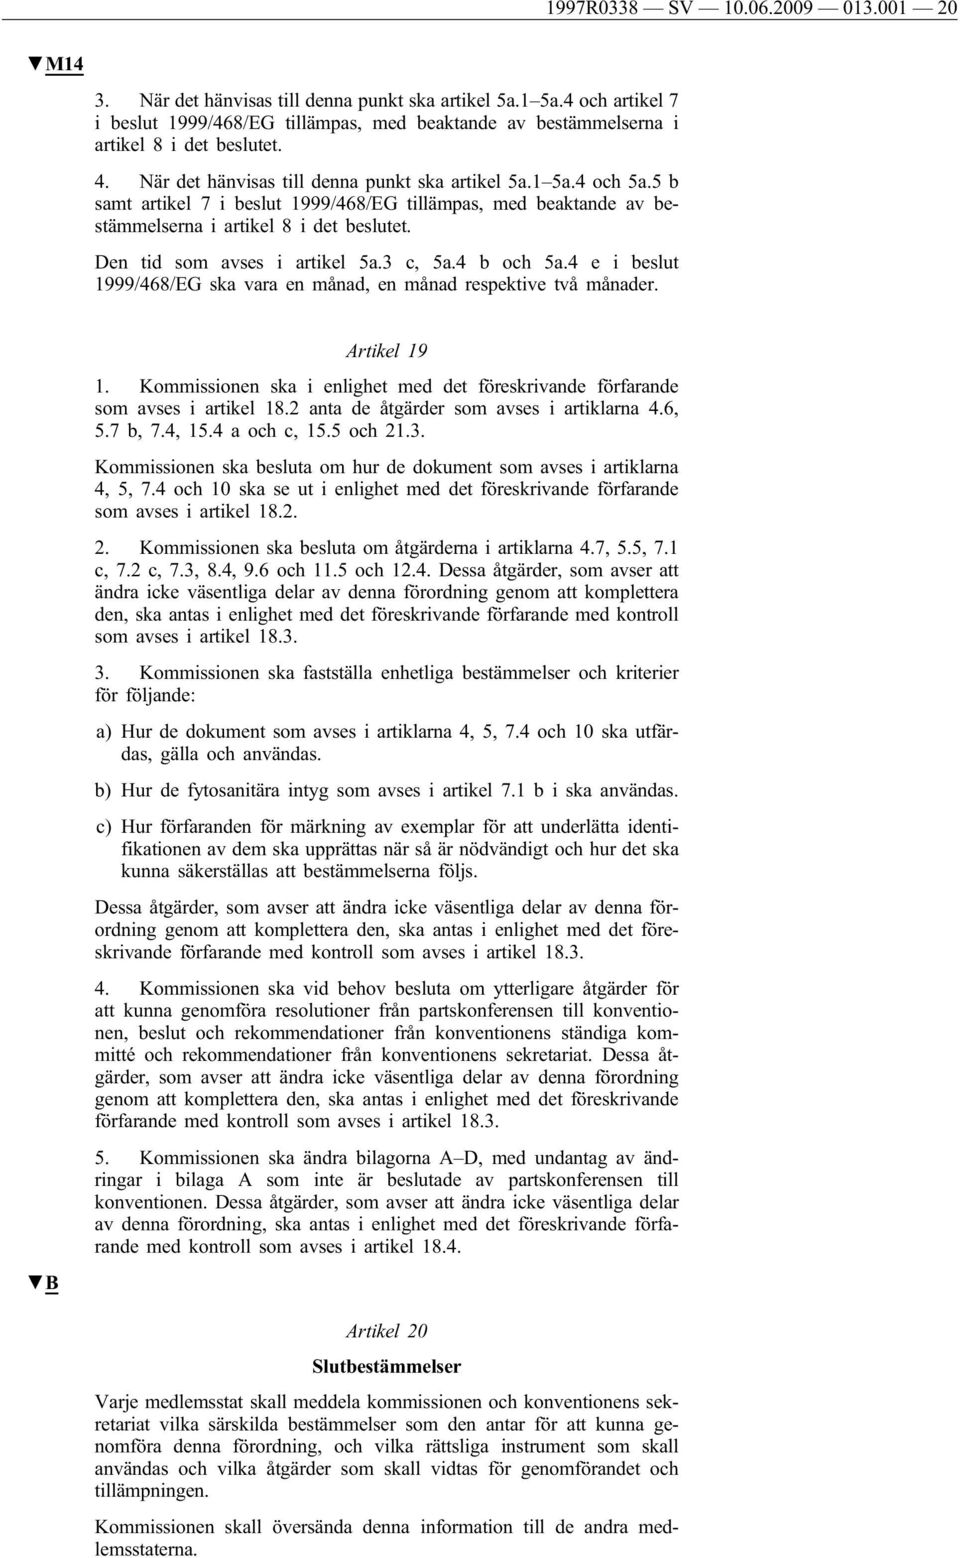 5 b samt artikel 7 i beslut 1999/468/EG tillämpas, med beaktande av bestämmelserna i artikel 8 i det beslutet. Den tid som avses i artikel 5a.3 c, 5a.4 b och 5a.